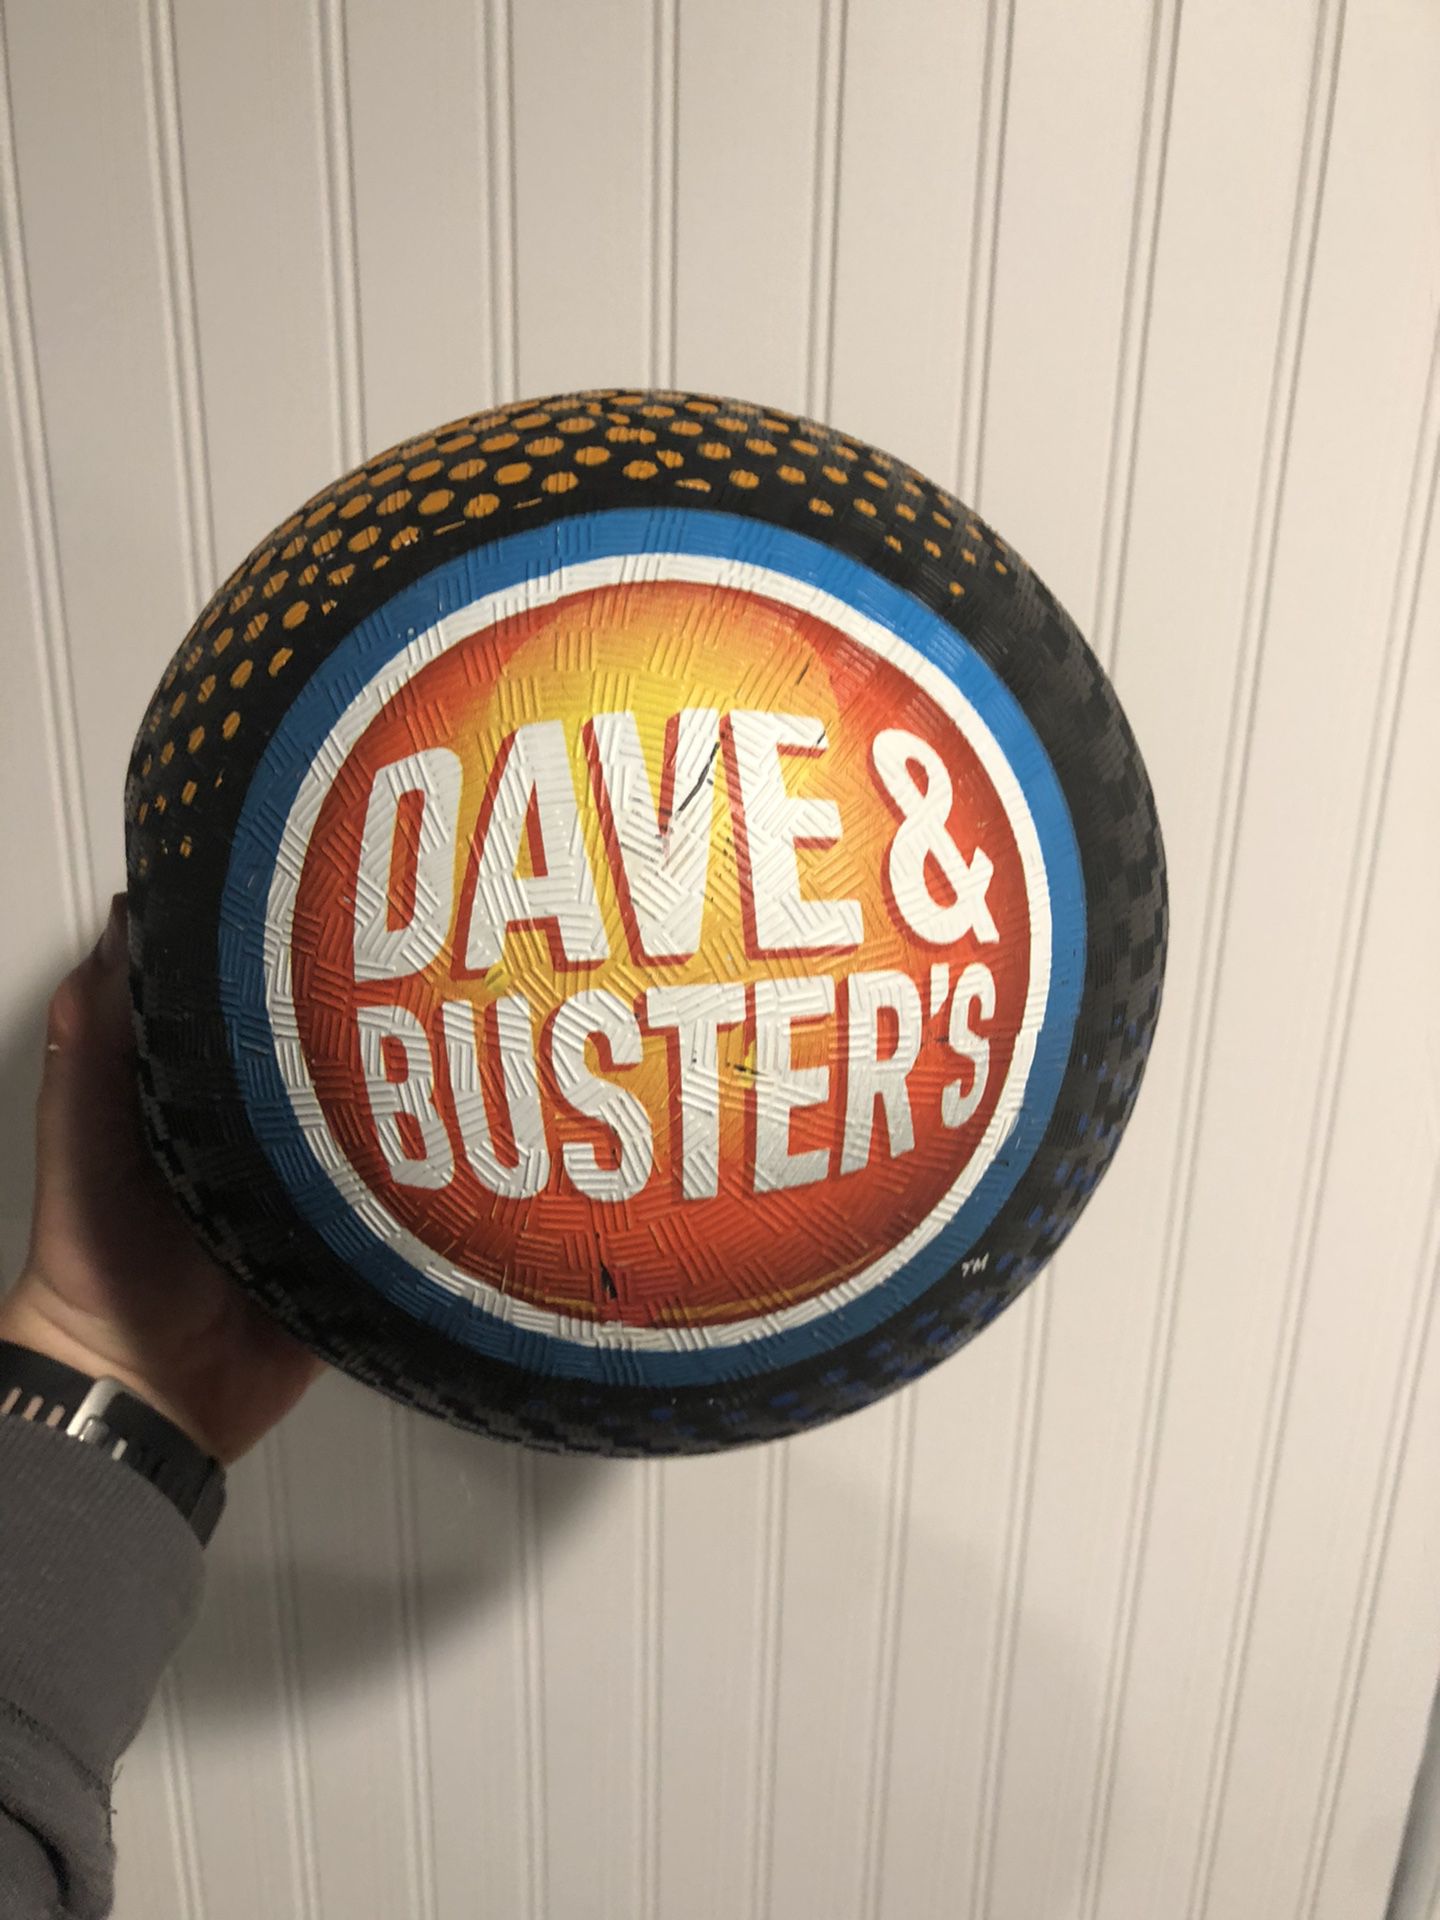 Dave and Buster kickball